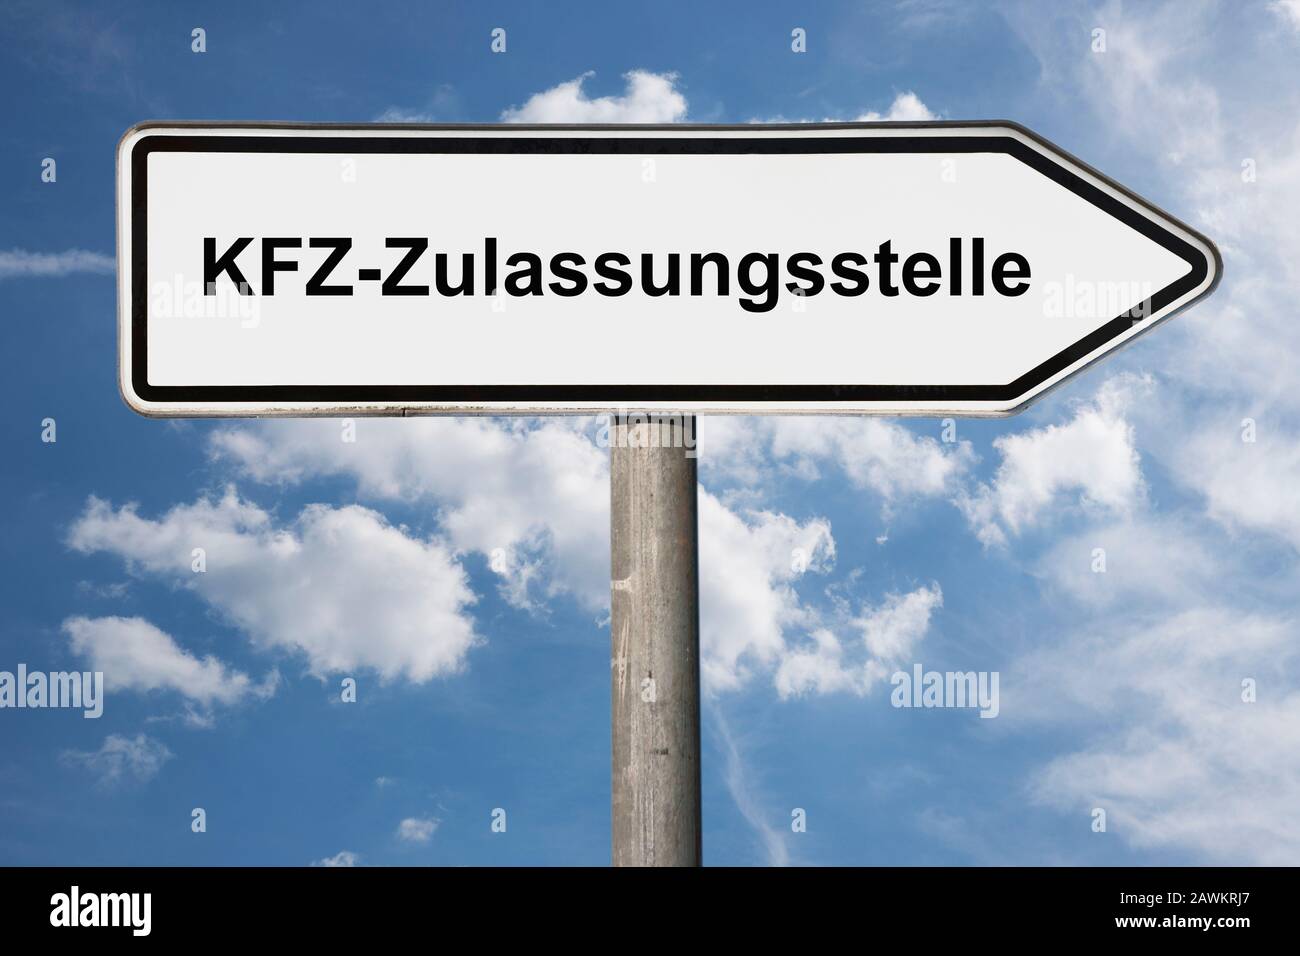 Foto de detalle de un cartel con la inscripción KFZ-Zulassungsstelle (Oficina de inscripción de coches) Foto de stock